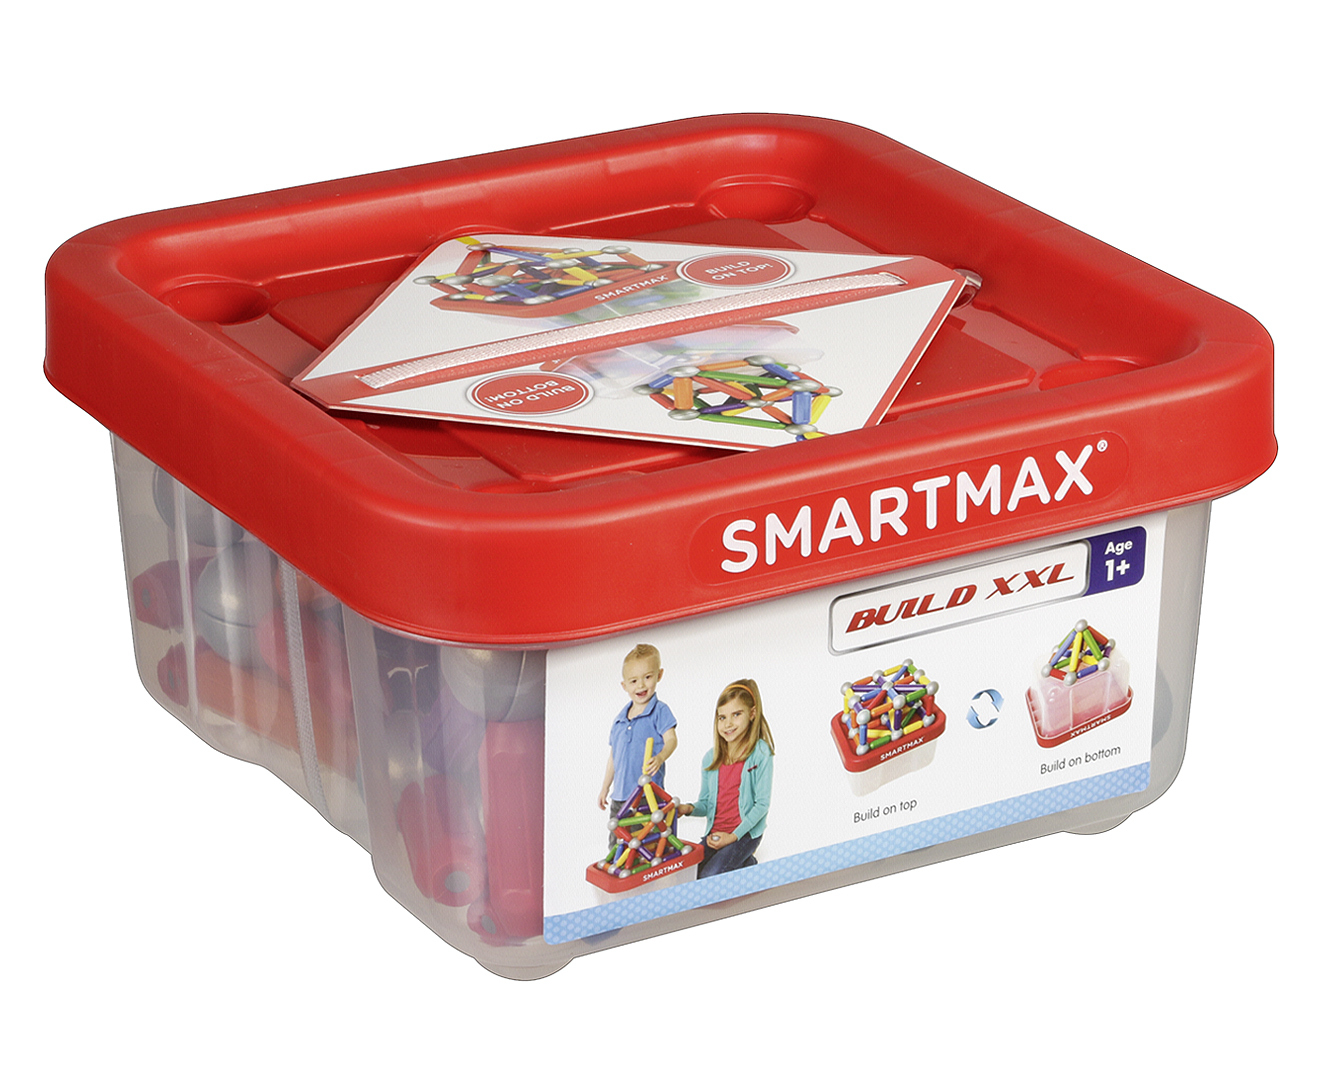 smartmax build xxl